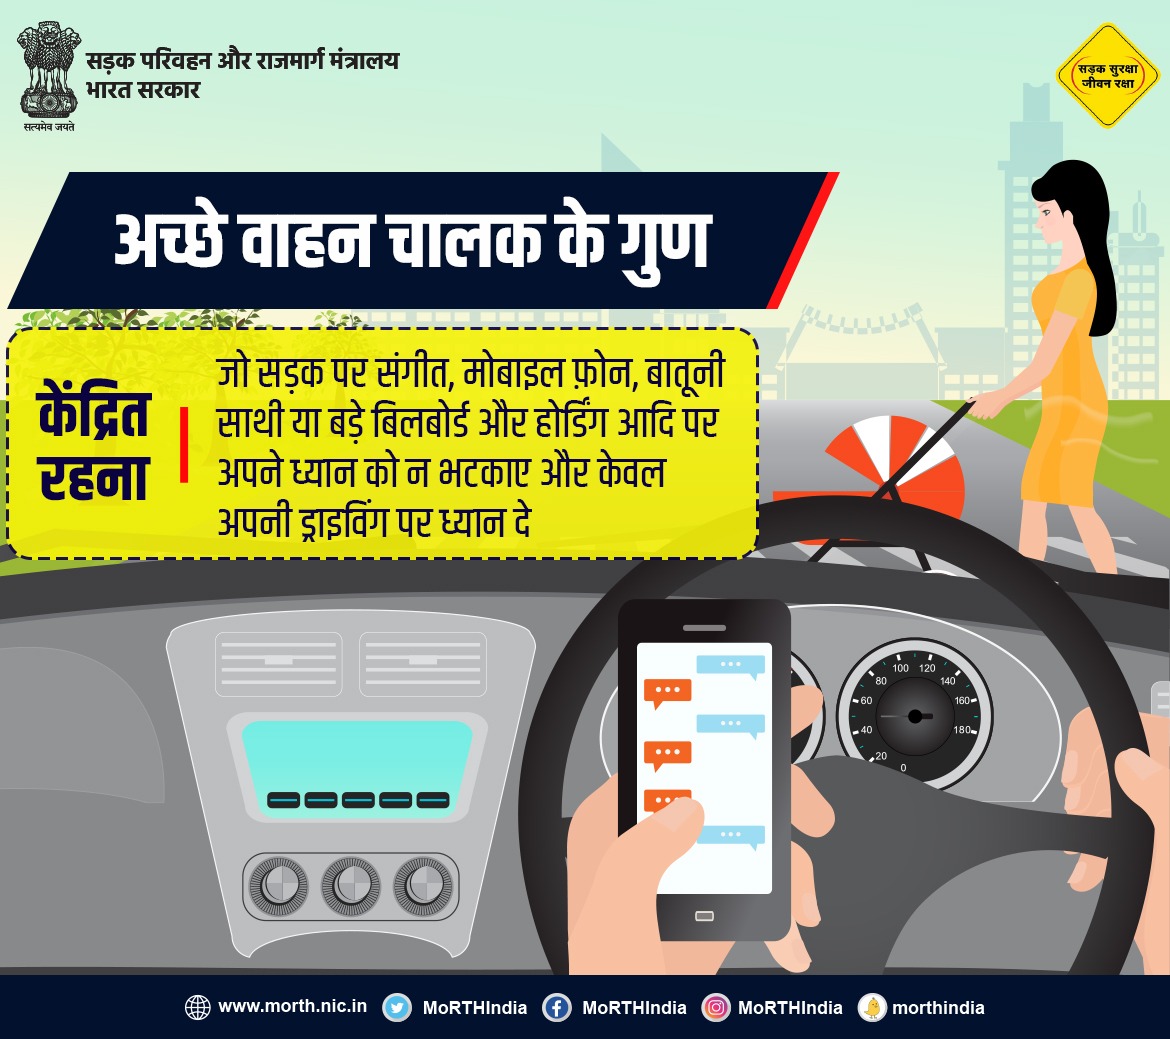 अच्छे वाहन चालक के गुण। #SadakSurakshaJeevanRaksha